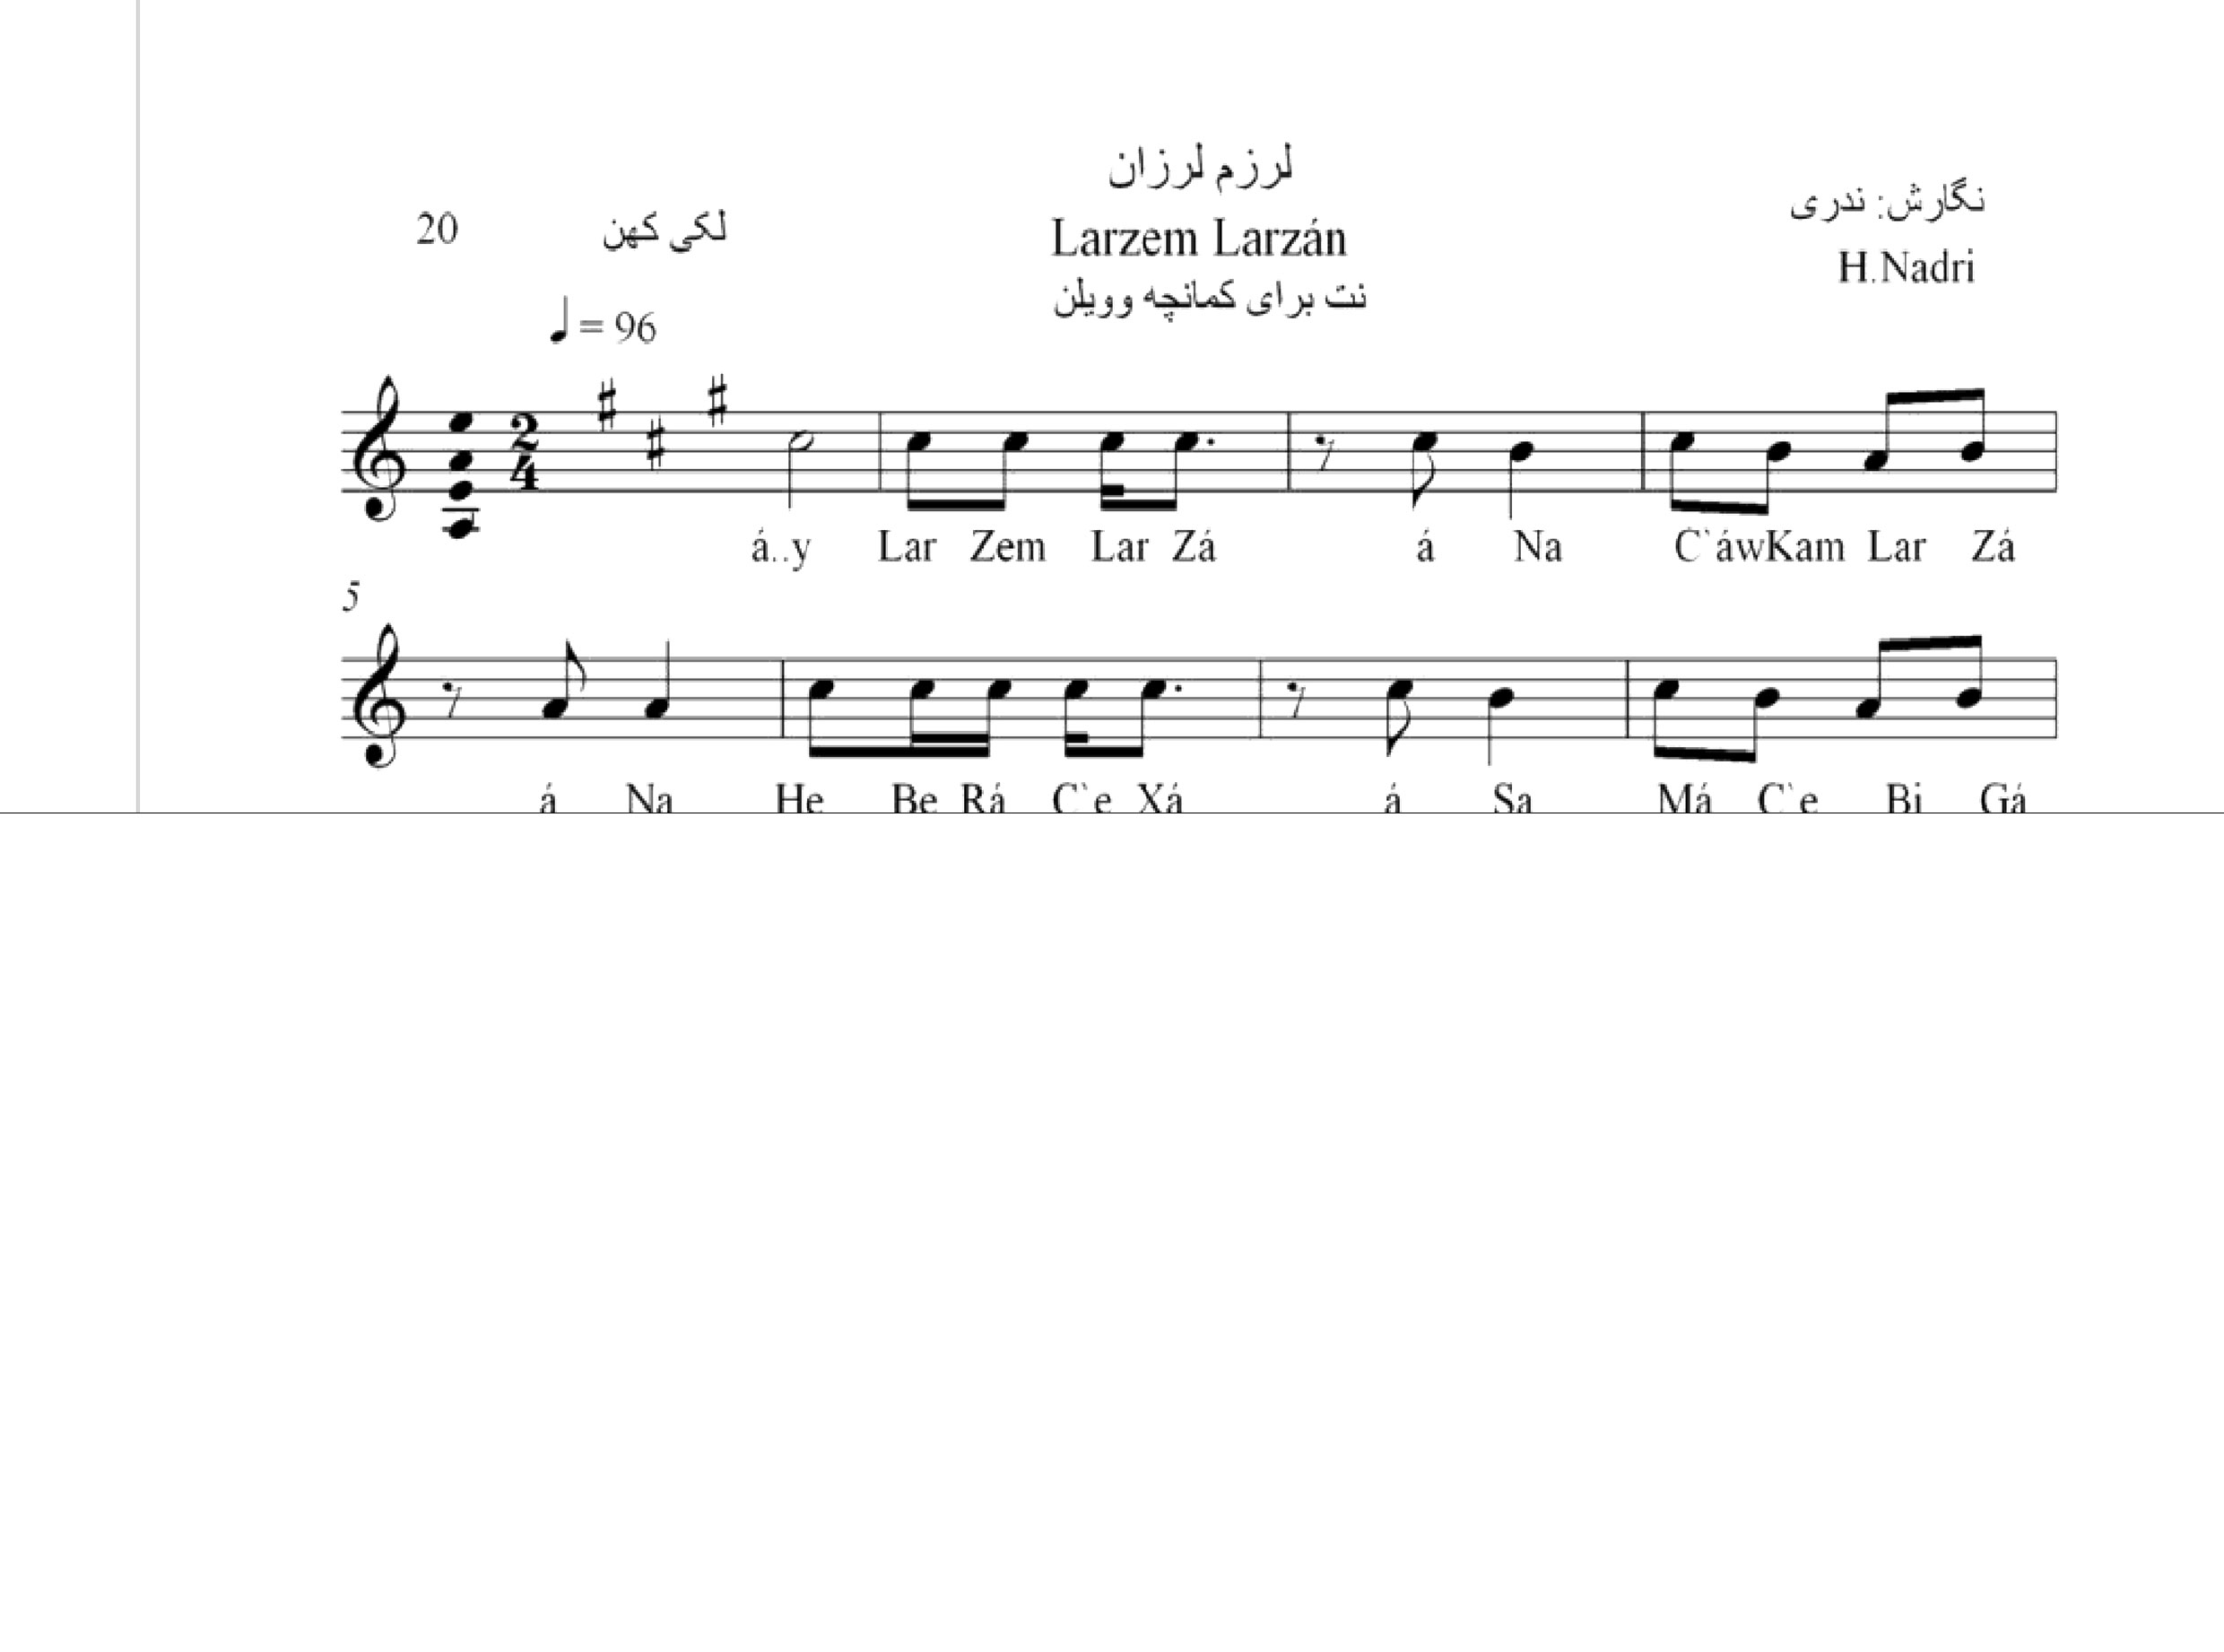 نت آهنگ لرزم لرزان محلی لری حجت اله ندری قابل اجرا با کمانچه و دیگر سازها